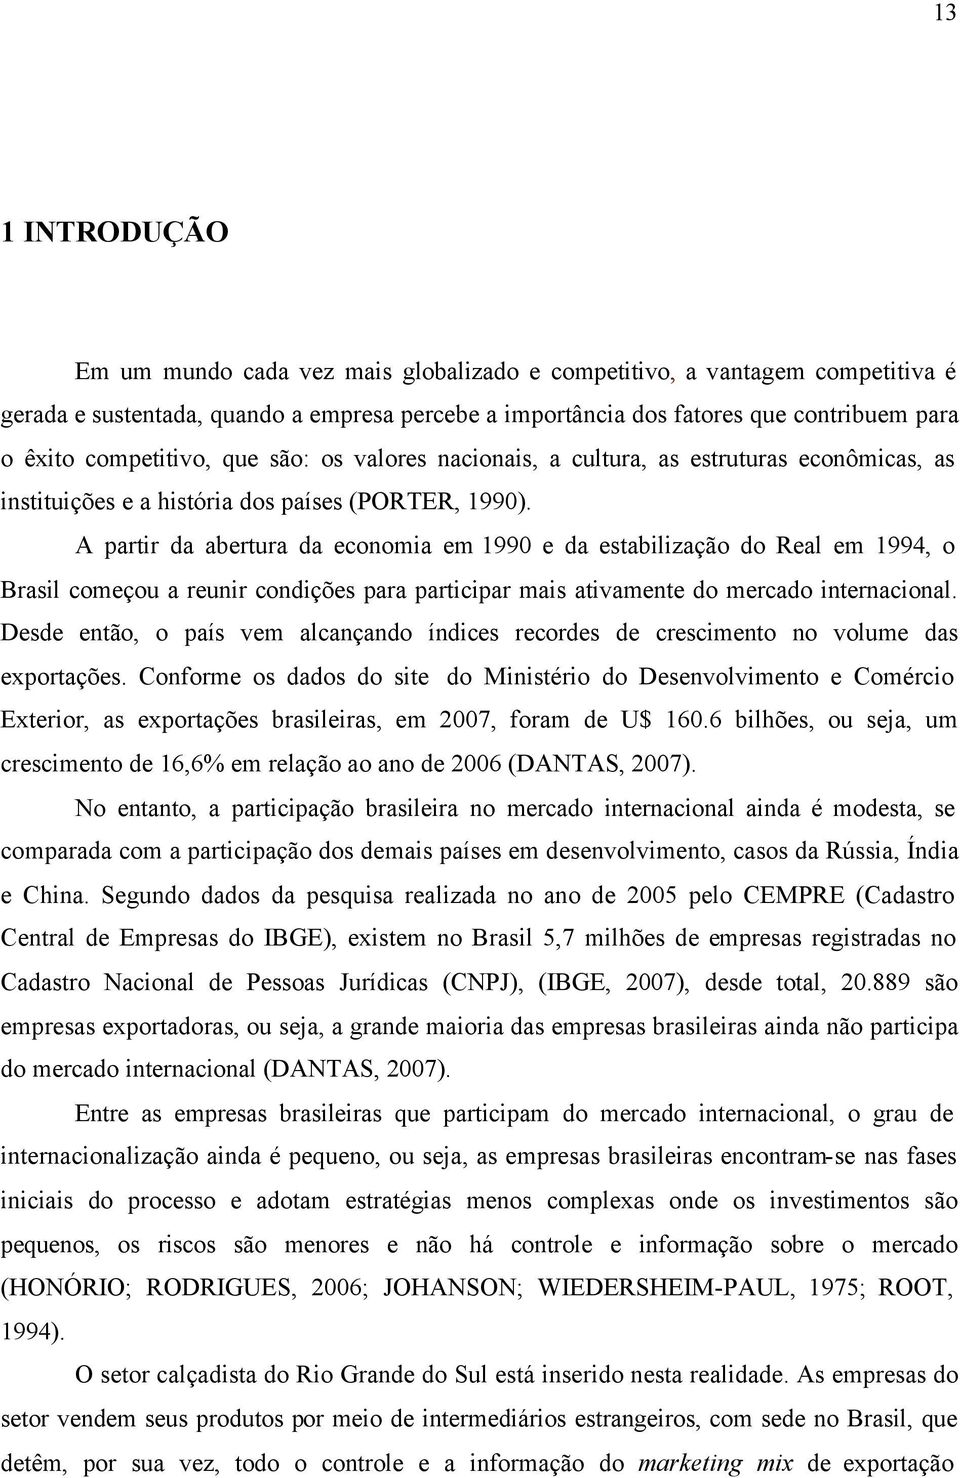 A partir da abertura da economia em 1990 e da estabilização do Real em 1994, o Brasil começou a reunir condições para participar mais ativamente do mercado internacional.